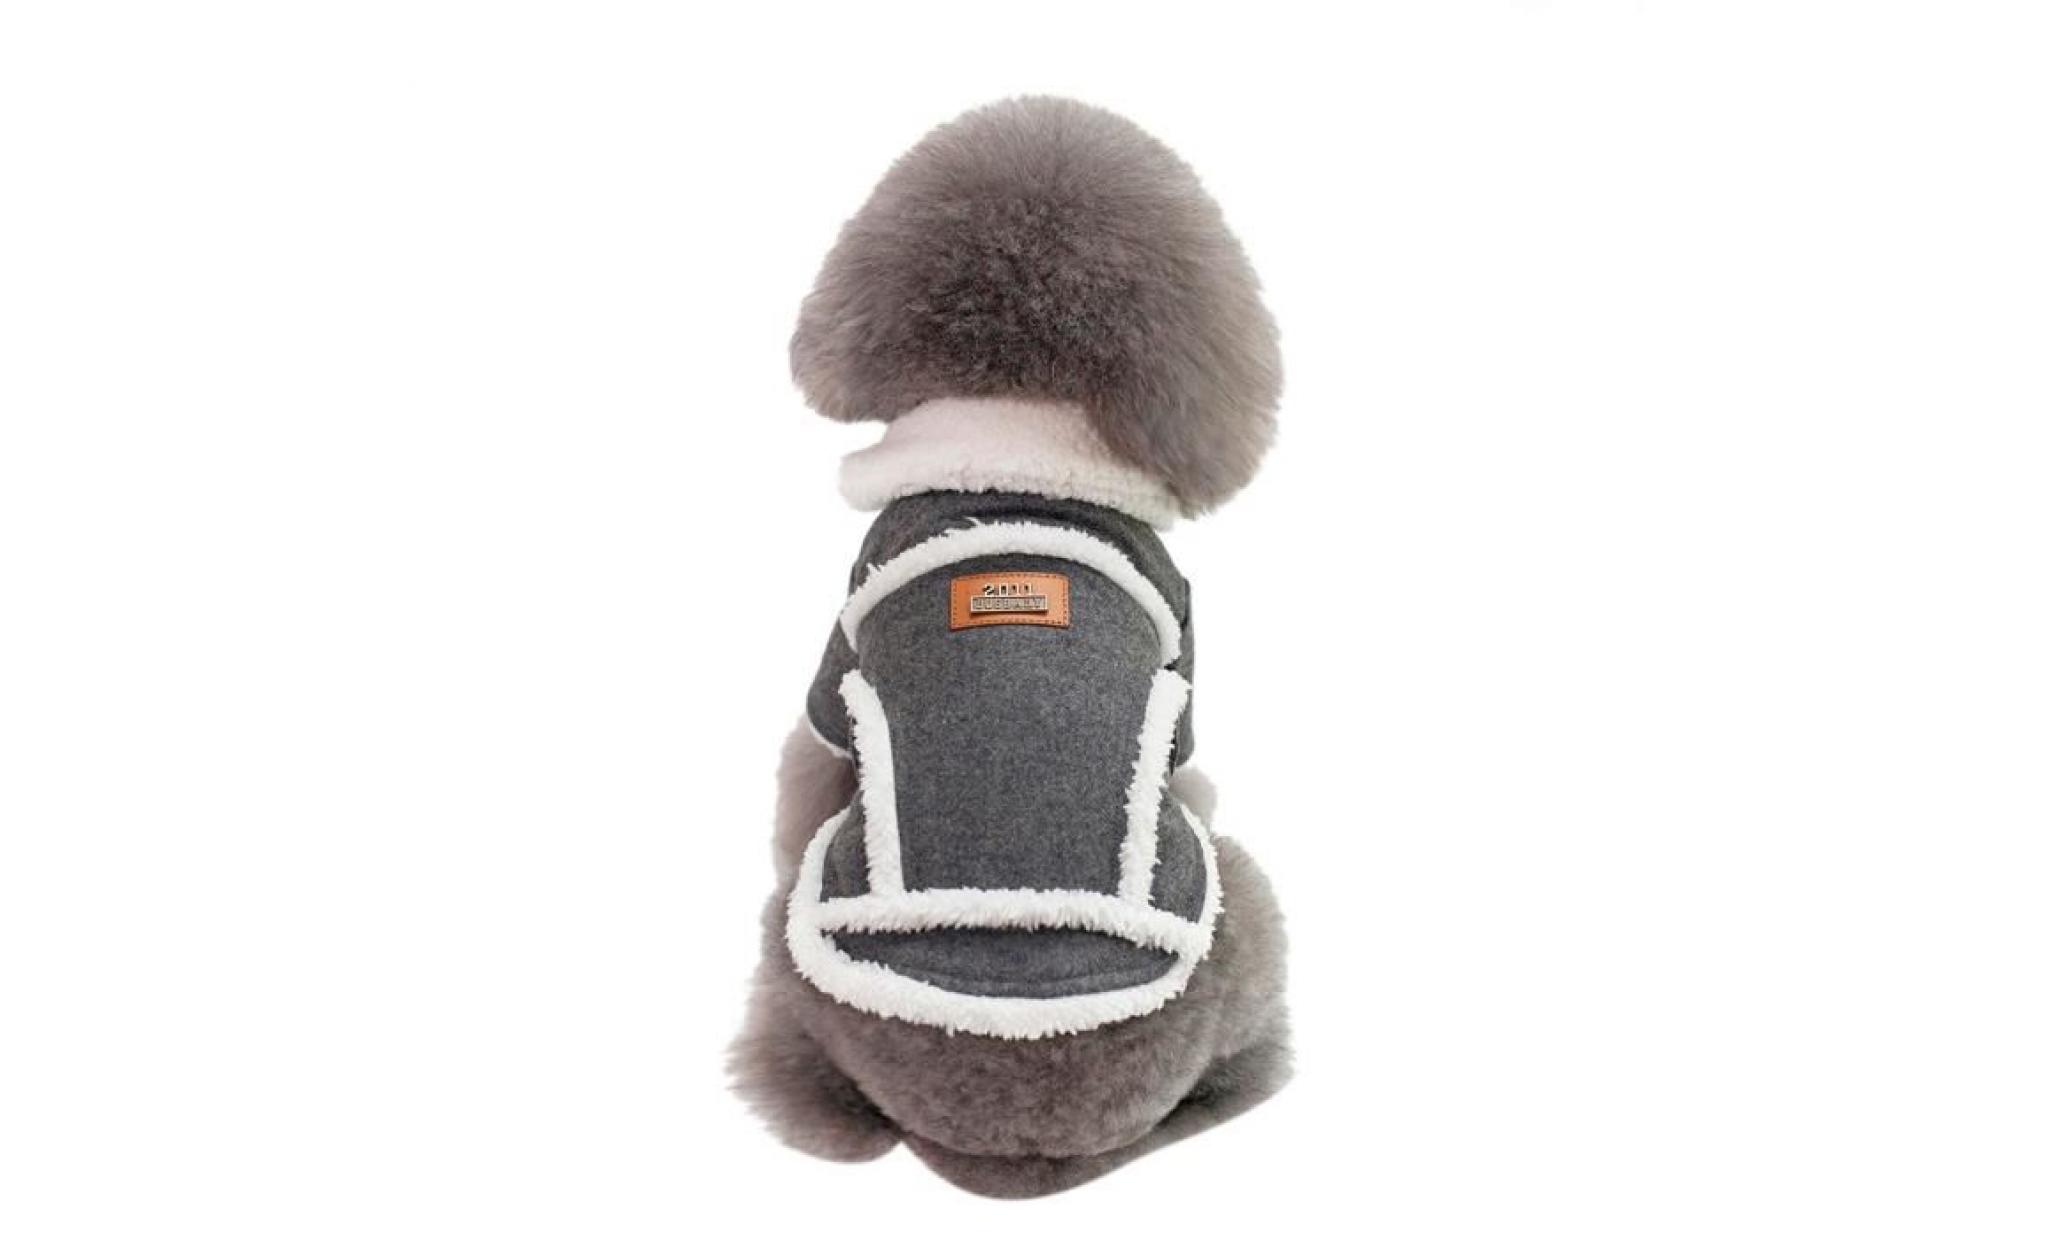 noir code m gris dogbaby nouveaux vêtements pour chiens animaux d'hiver usine spot directs modèles d'explosion du commerce